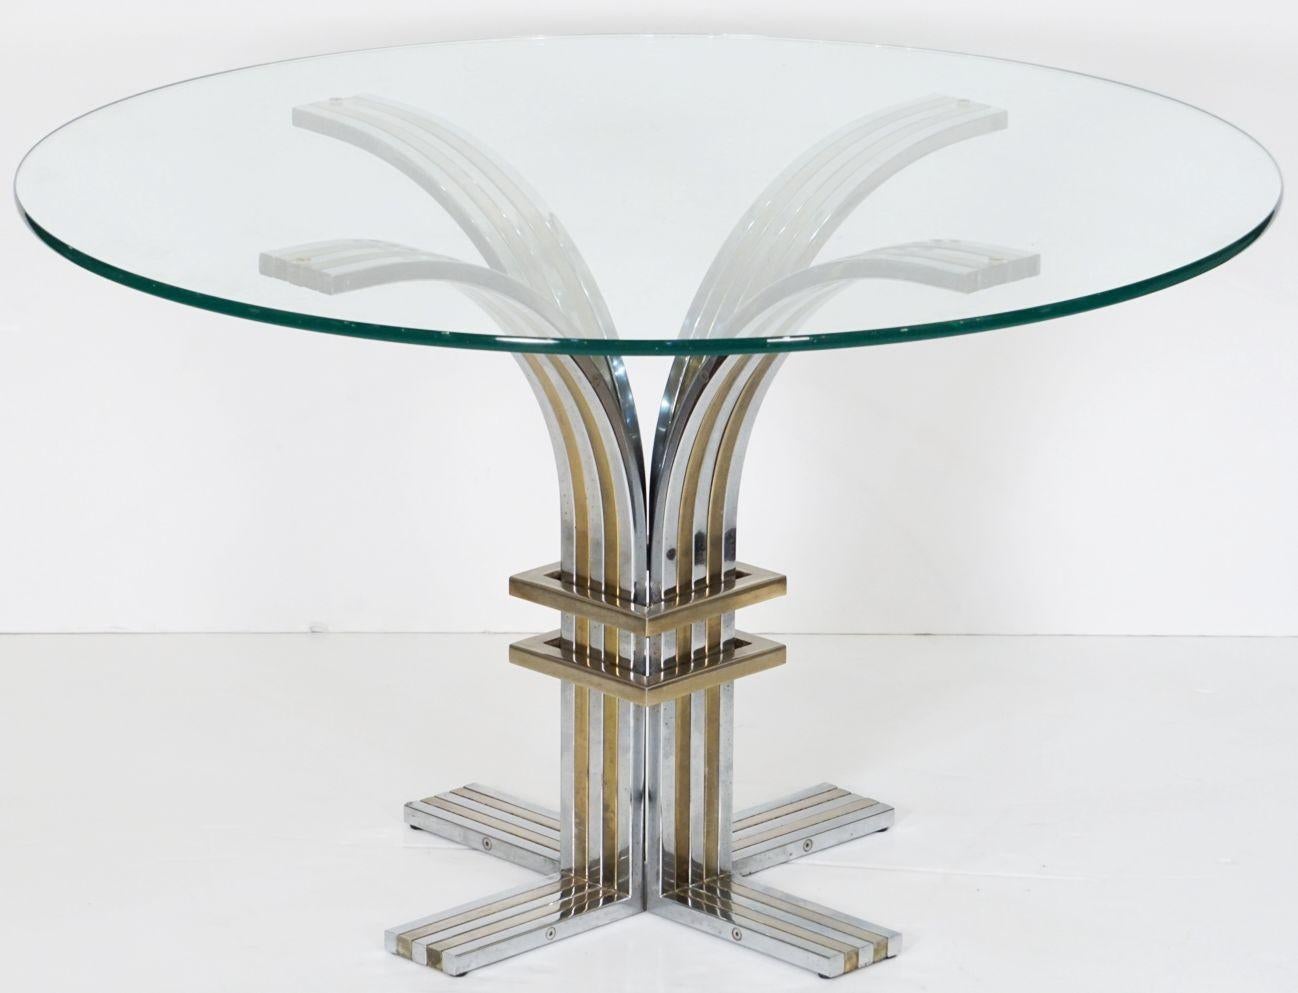 Ein feiner modernistischer Ess- oder Mitteltisch aus Italien, um 1970, mit vier Bögen über einem kreuzförmigen Sockel aus verchromtem Metall und Messing mit einer runden Glasplatte, die dem berühmten italienischen Designer Romeo Rega zugeschrieben